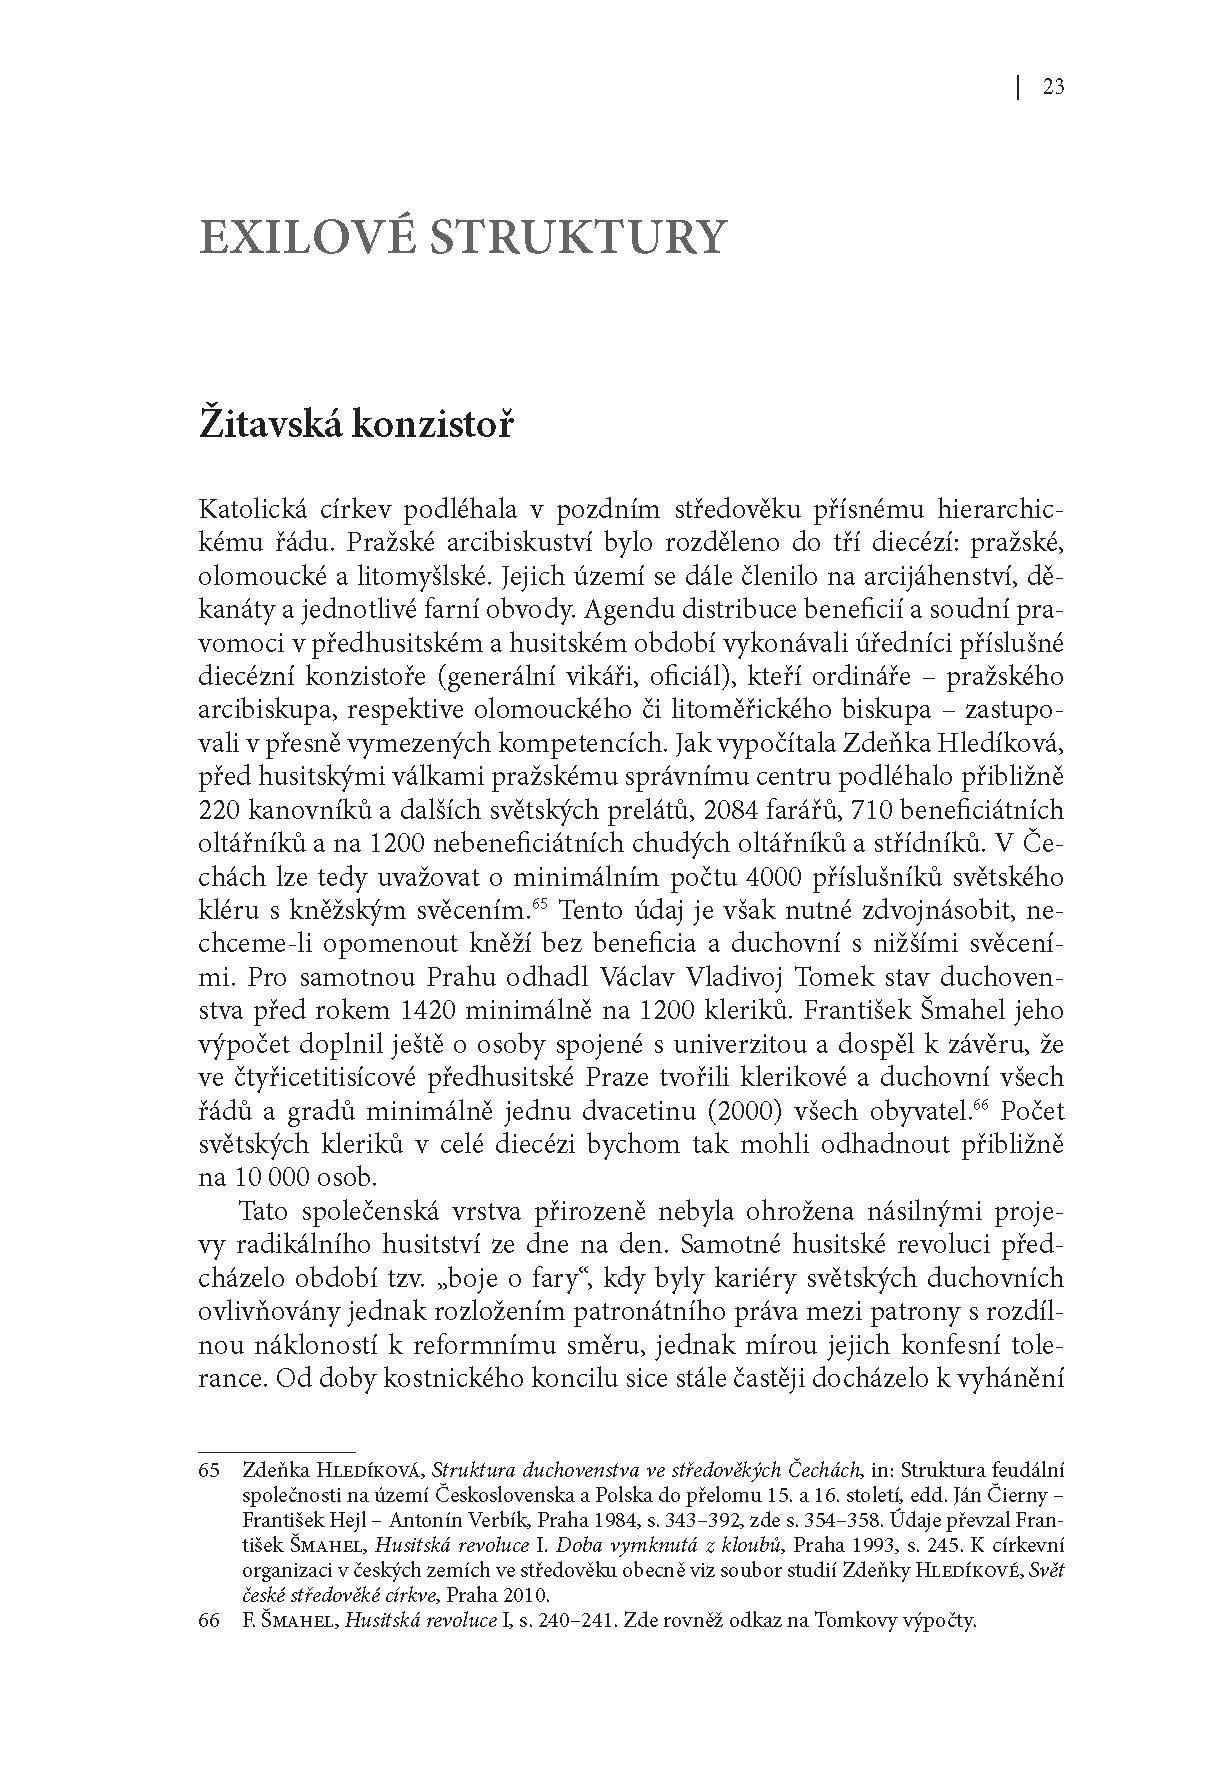 Exil českého a moravského duchovenstva ukázka-6